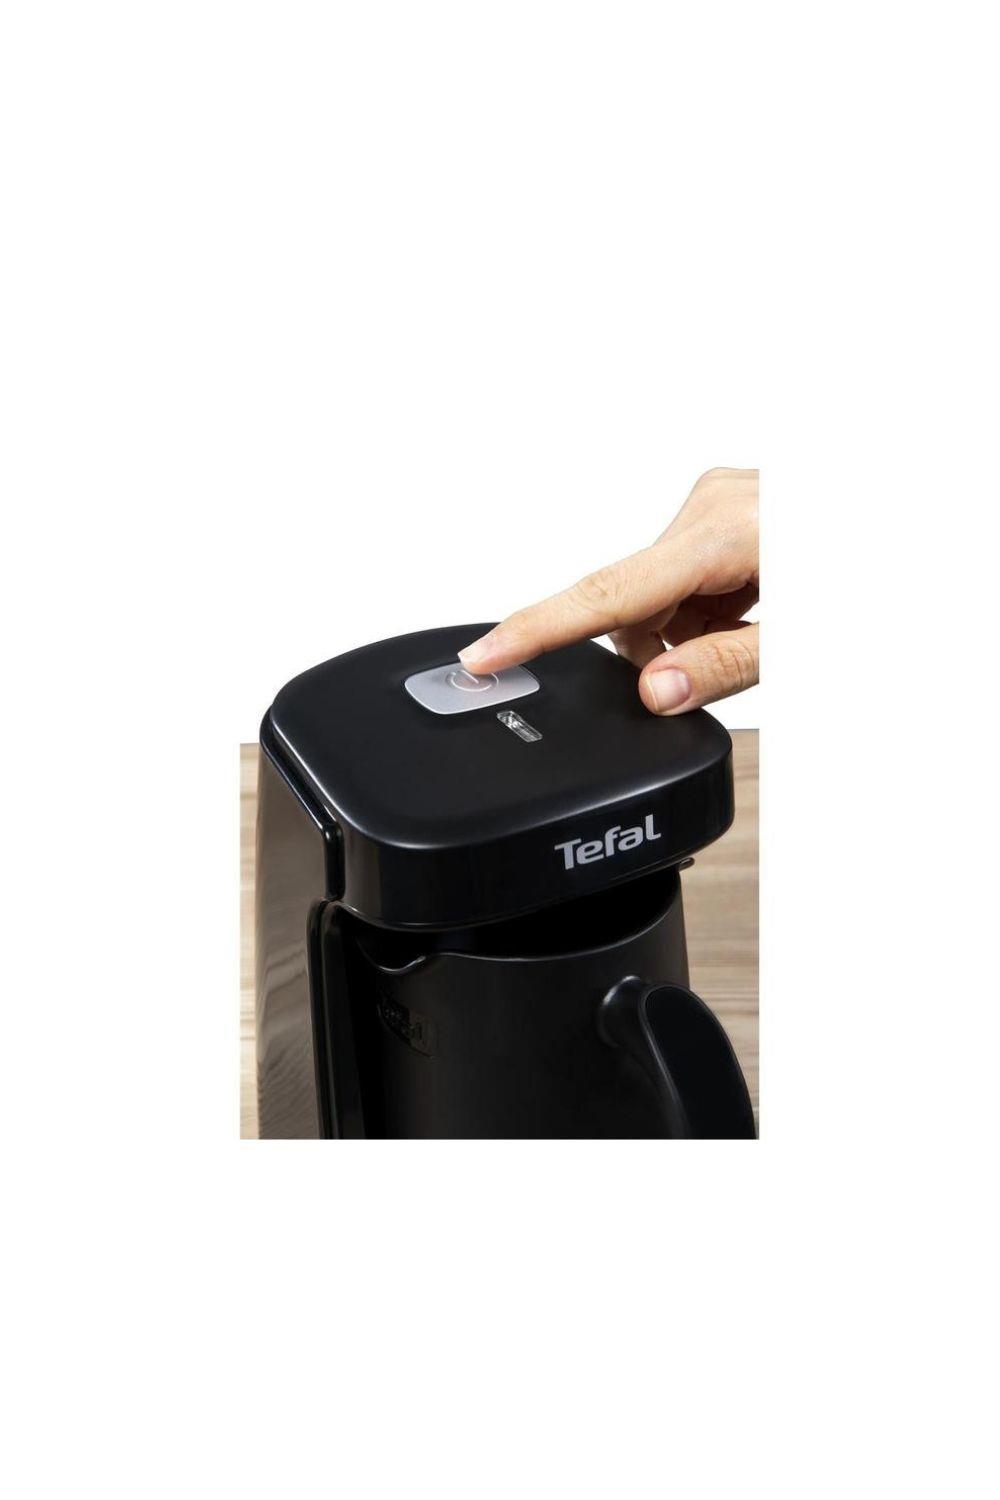 Tefal CM8118 Köpüklüm Compact Siyah Türk Kahve Makinesi (Teşhir & Outlet) -  9100040089 - Teşhir & Outlet Fırsatlarıyla | En Uygun Fiyatlar ve Hızlı  Kargo!